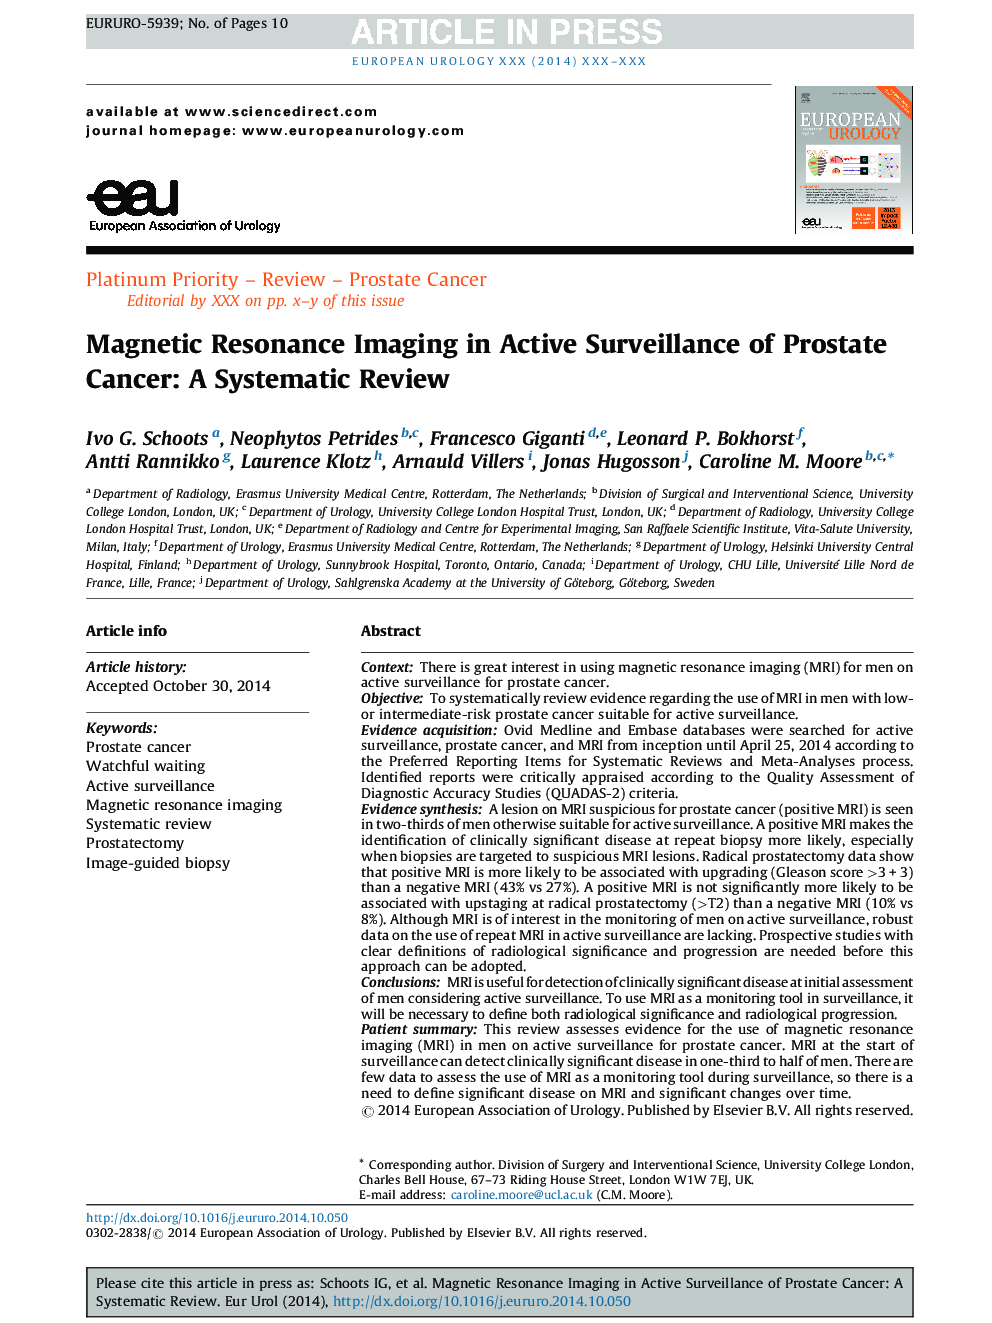 تصویربرداری رزونانس مغناطیسی در نظارت فعال سرطان پروستات: بازنگری سیستماتیک 